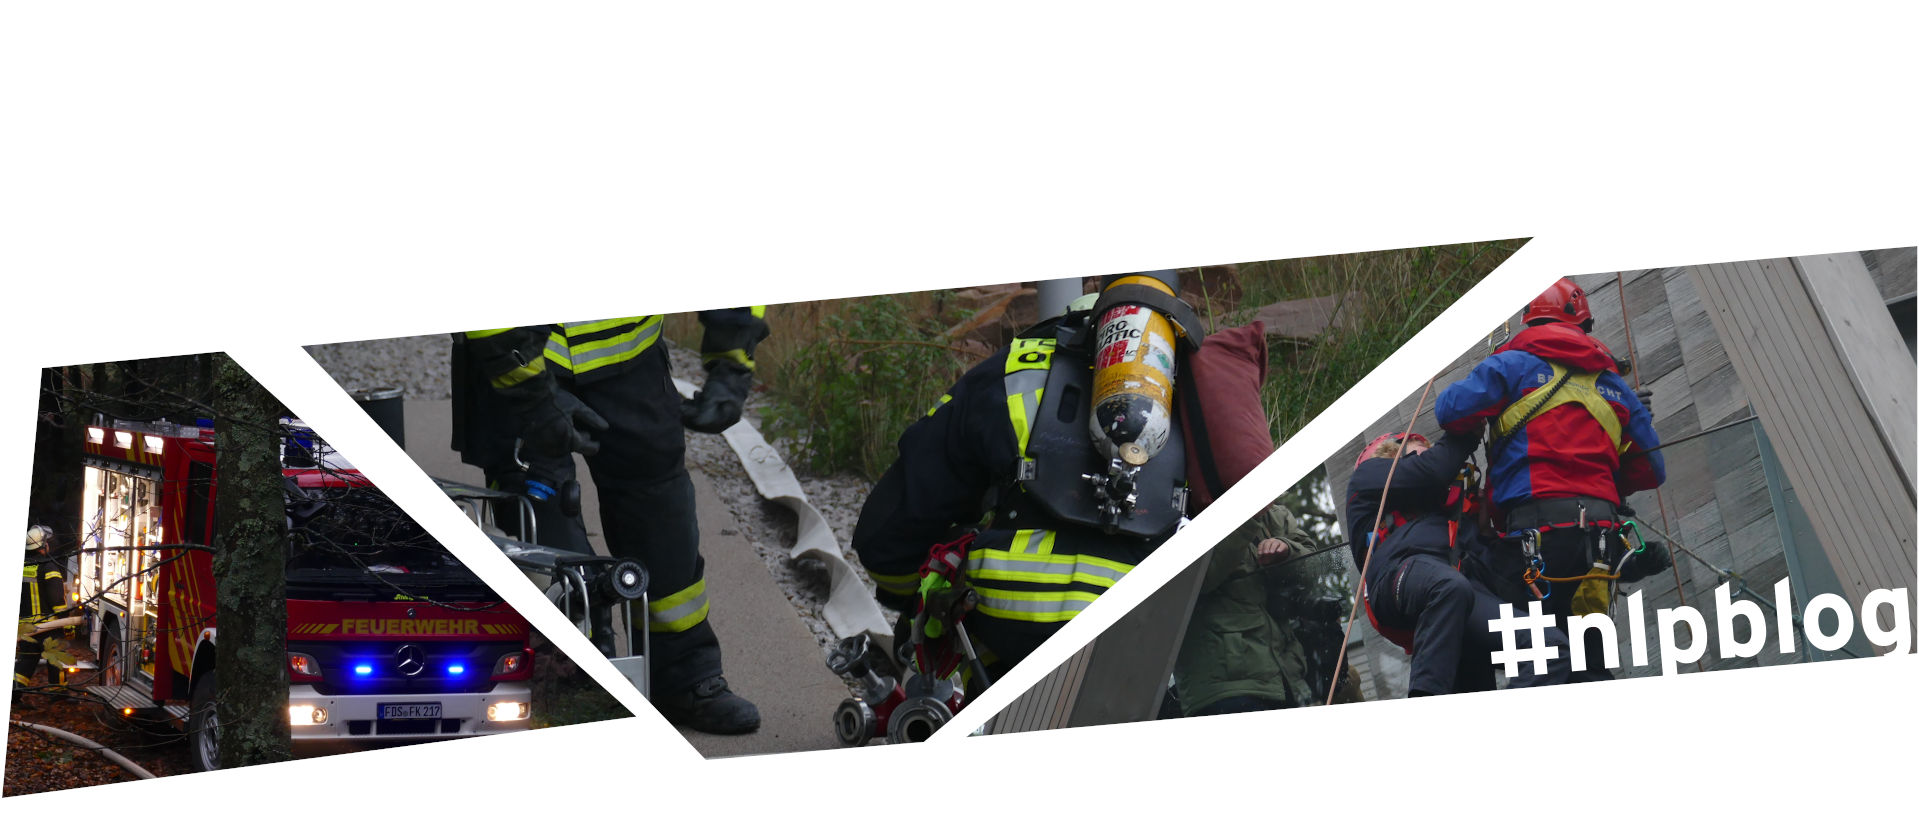 Mosaik aus drei Bildausschnitten. Links ein Feuerwehrauto mit angeschaltetem Blaulicht, das im Wald steht. In der Mitte zwei Feuerwehrleute beim Entrollen eines Schlauchs. Rechts ein Vertreter oder eine Vertreterin der Bergwacht, der oder die eine Person abseilt. Die Personen der Rettungskräfte sind an den jeweils typischen Uniformen zu erkennen.